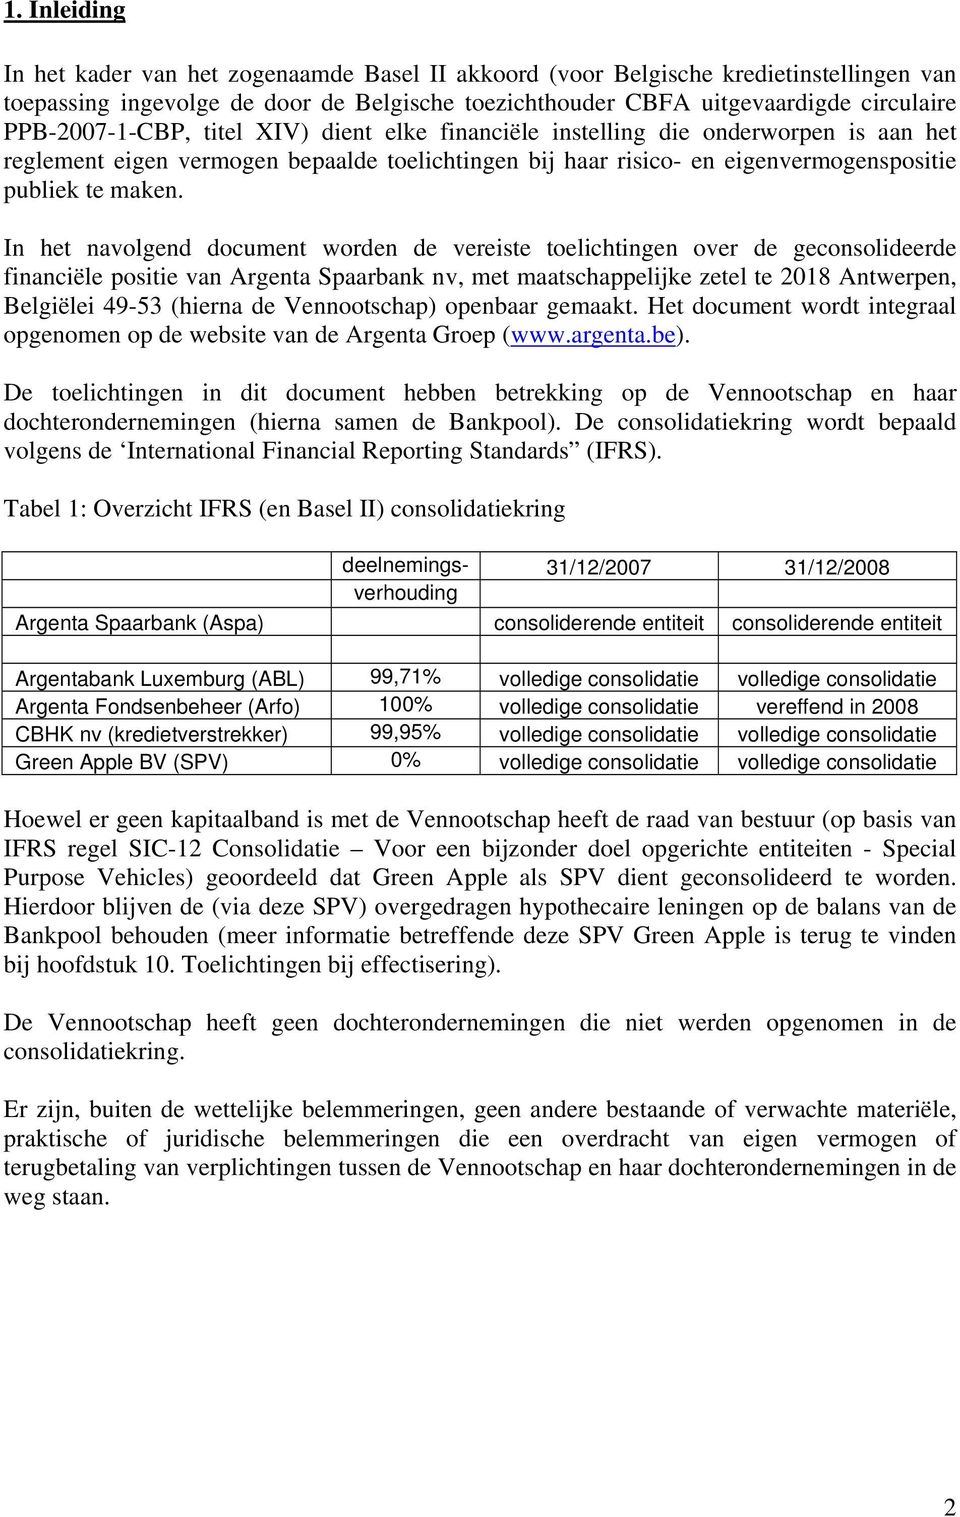 In het navolgend document worden de vereiste toelichtingen over de geconsolideerde financiële positie van Argenta Spaarbank nv, met maatschappelijke zetel te 2018 Antwerpen, Belgiëlei 49-53 (hierna